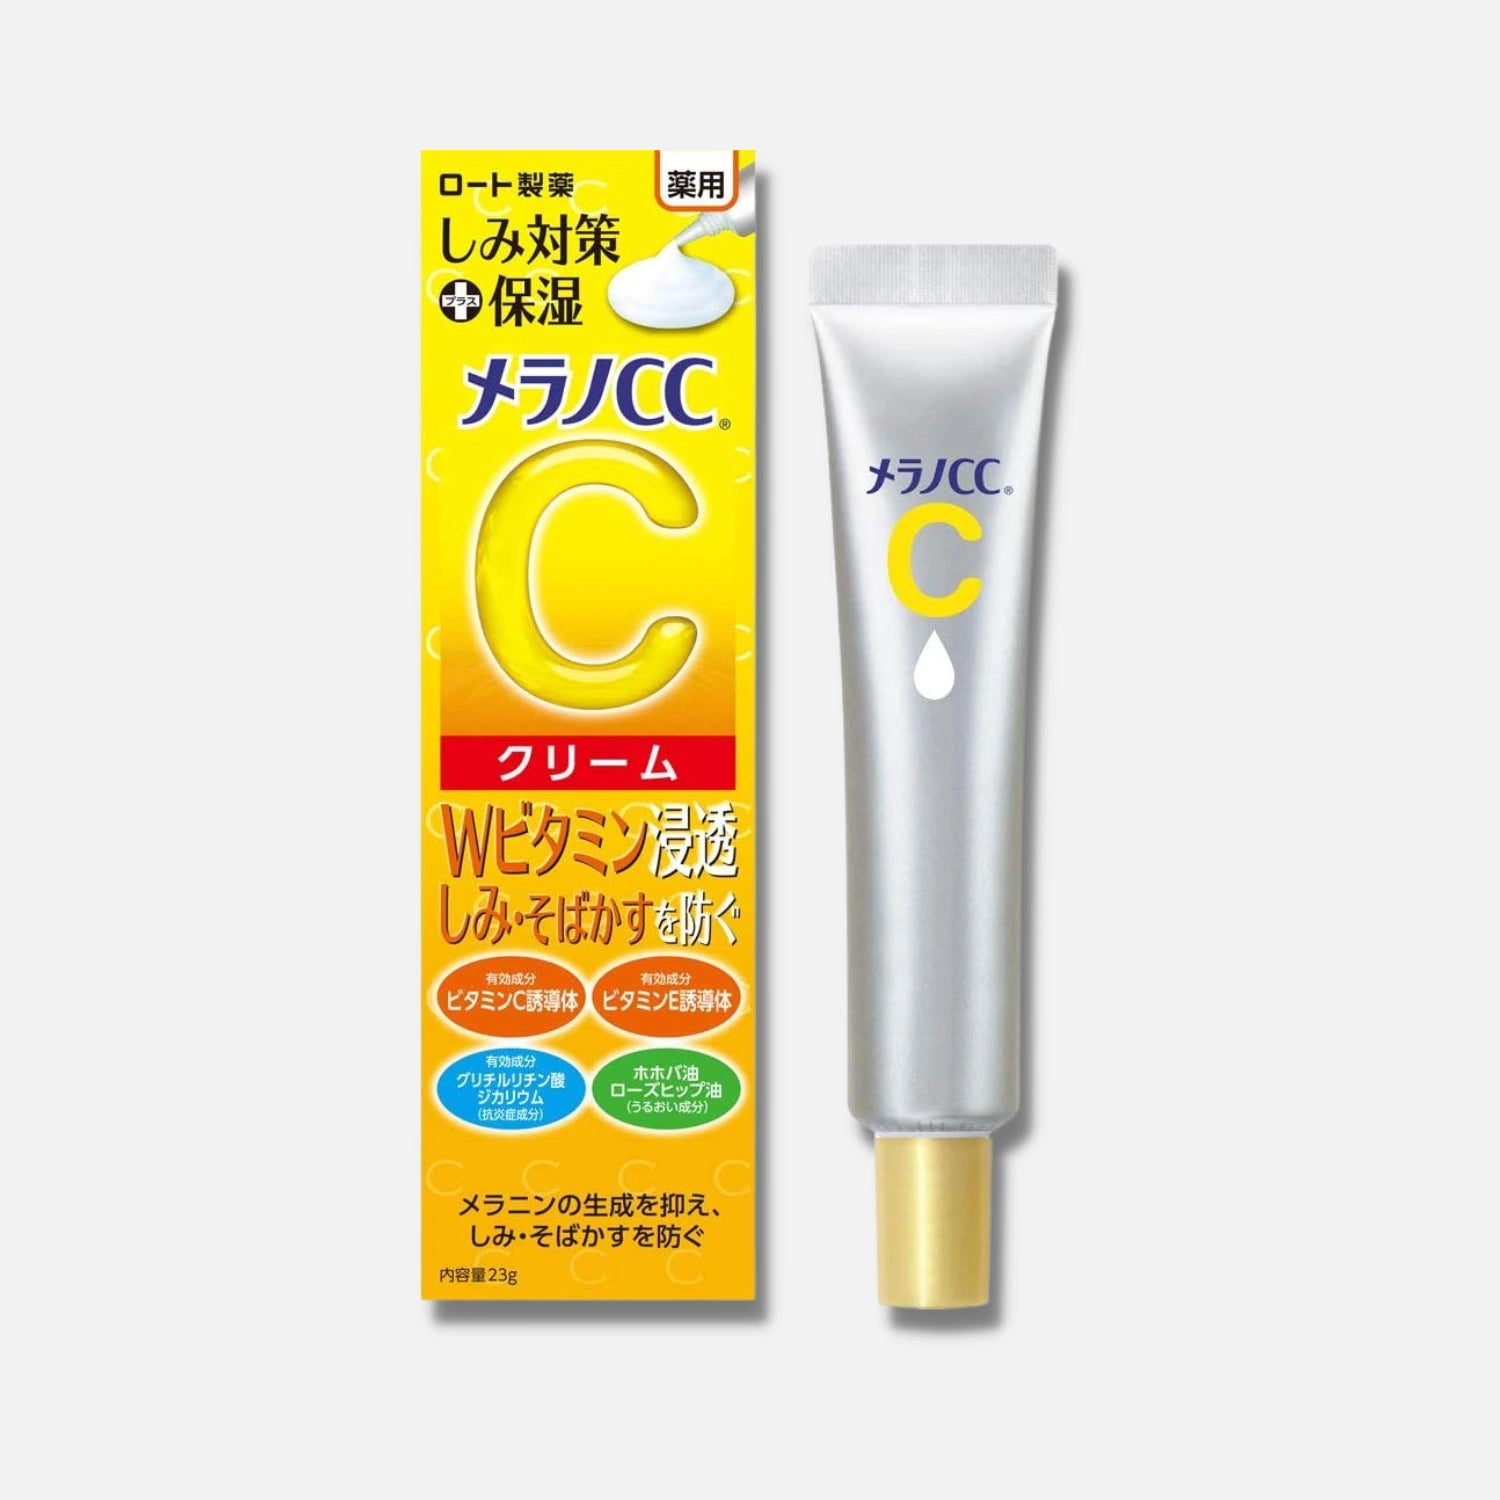 Melano CC Vitamin C Cream 23g - Buy Me Japan